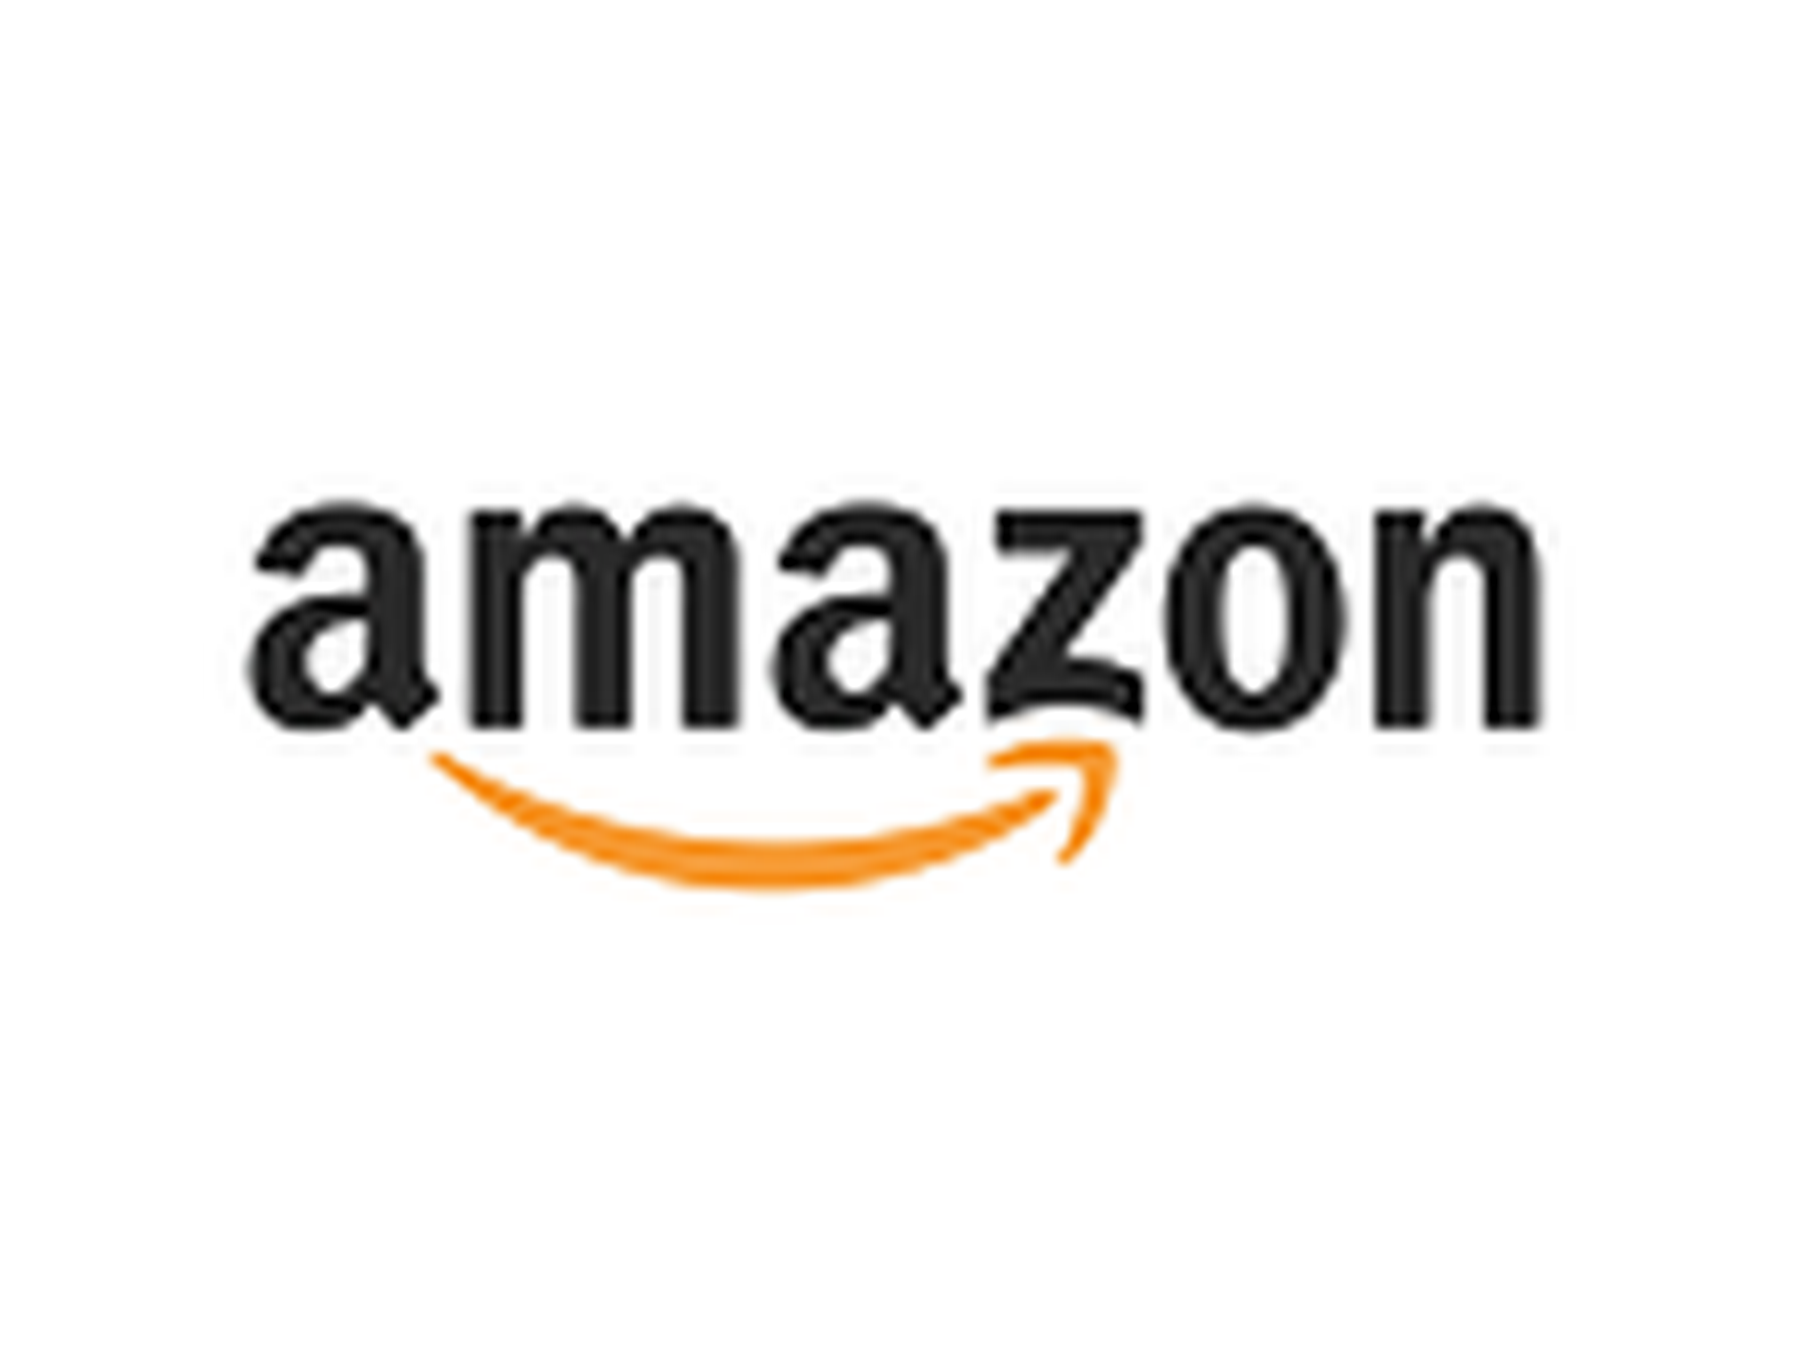 Amazon kortingscode